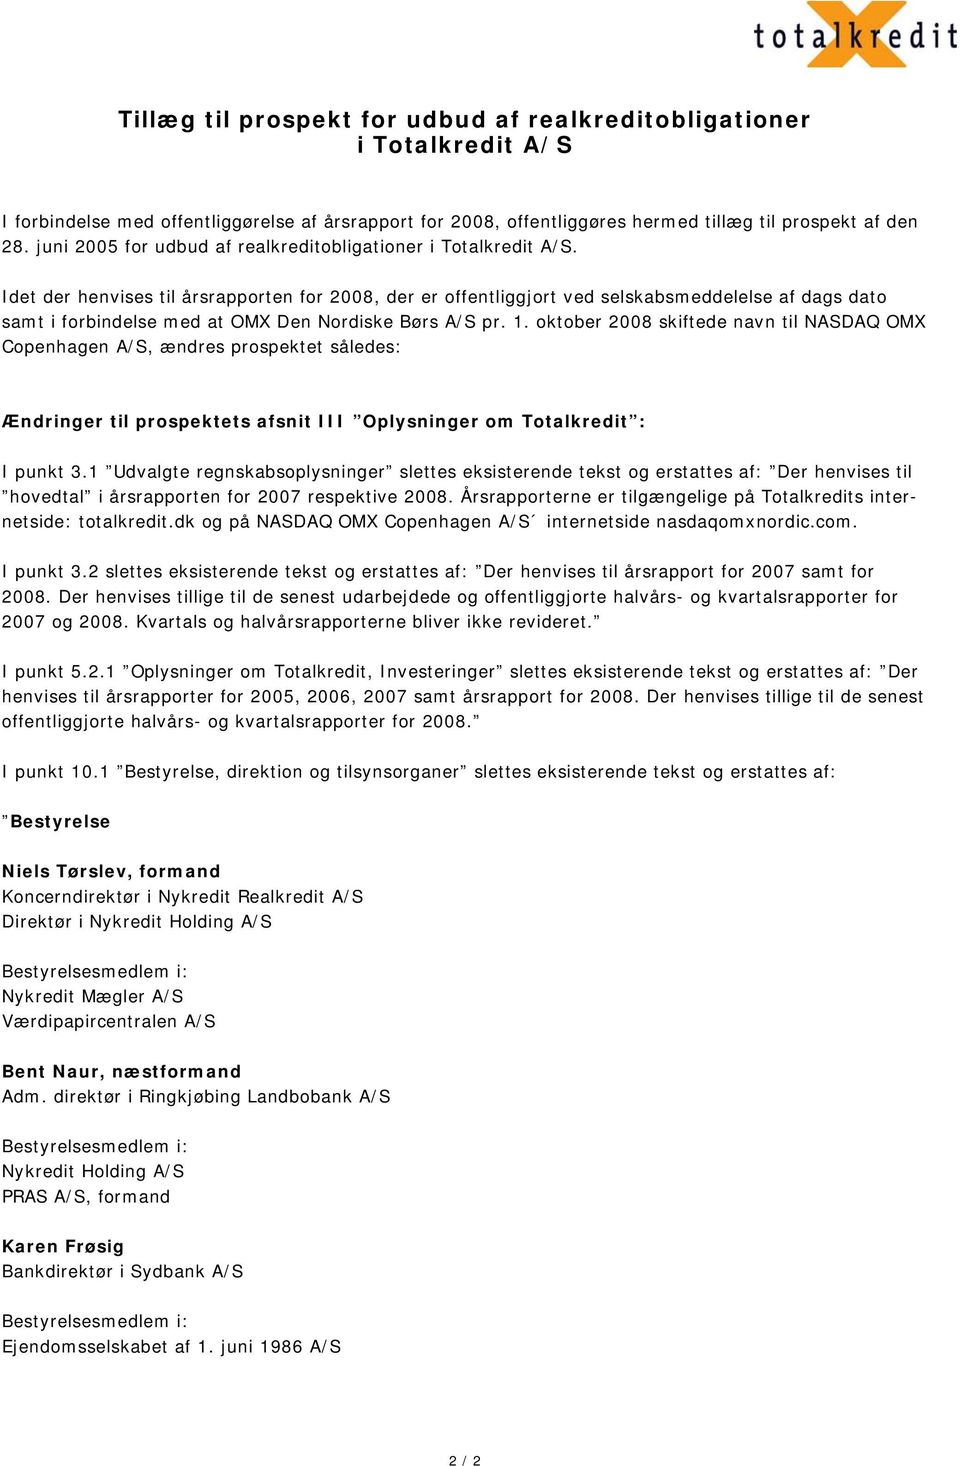 Idet der henvises til årsrapporten for 2008, der er offentliggjort ved selskabsmeddelelse af dags dato samt i forbindelse med at OMX Den Nordiske Børs A/S pr. 1.